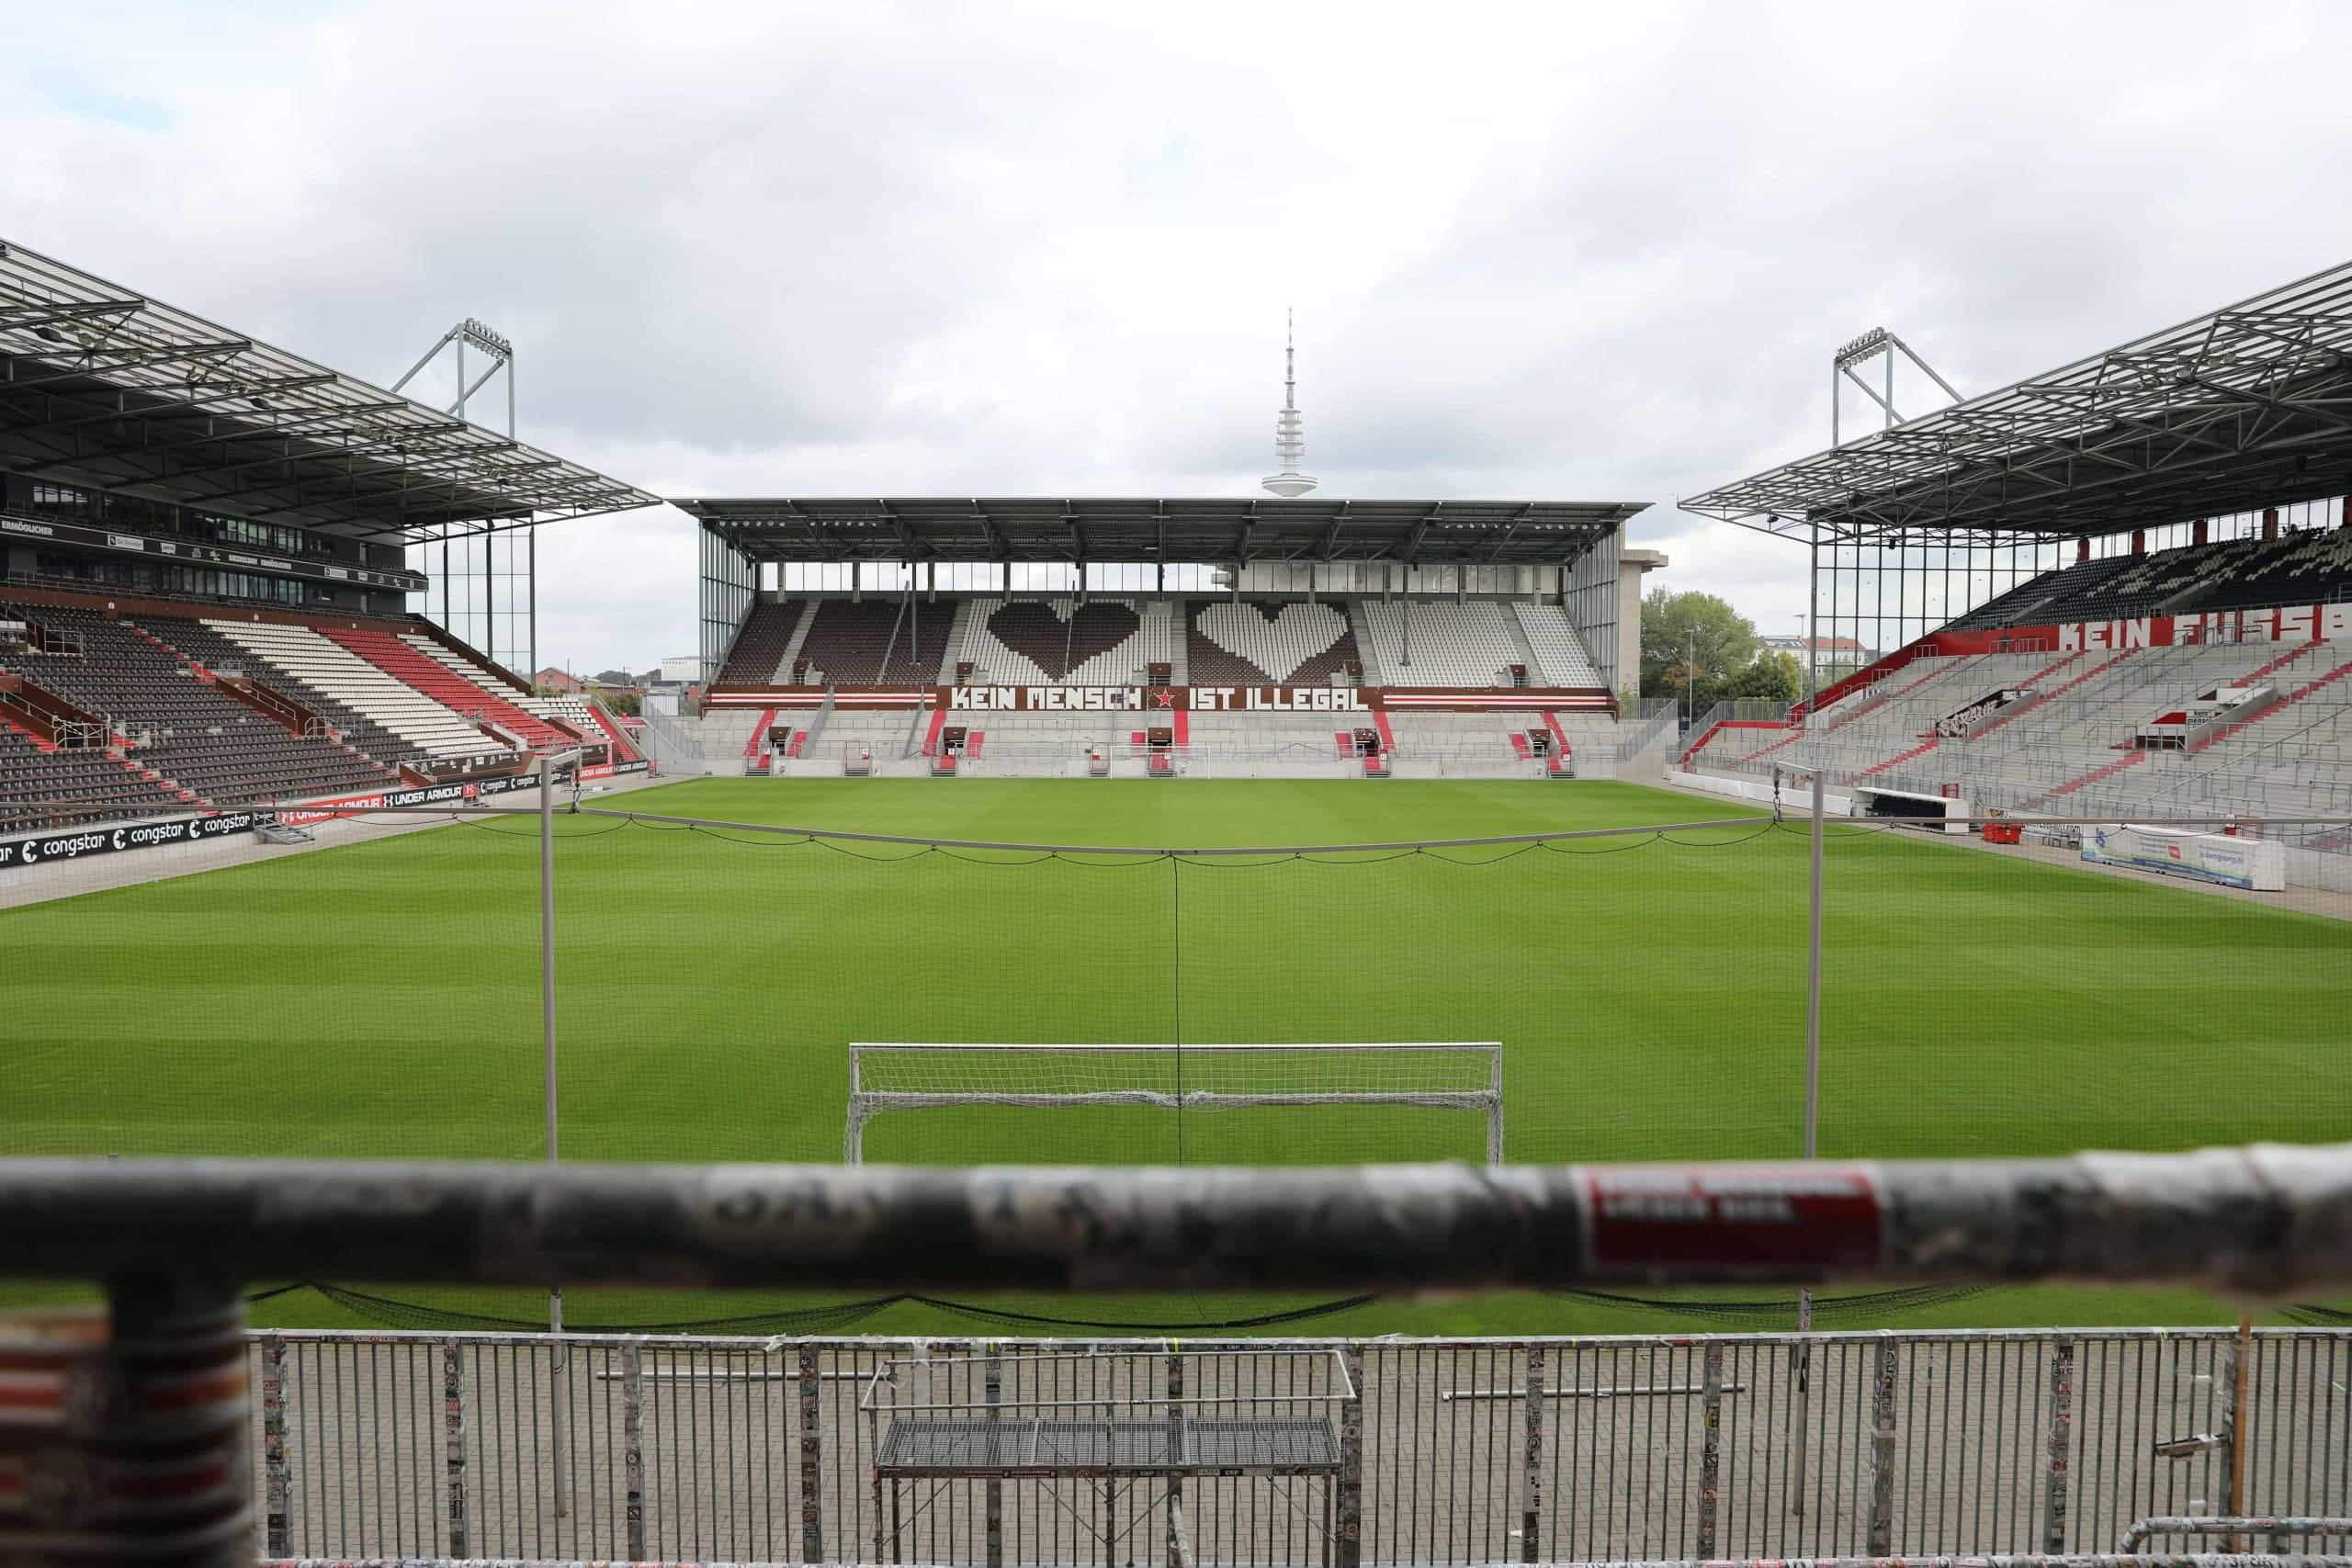 Panorama des Fußballstadions FC St. Pauli am Hamburger Millerntor am Tag und ohne Zuschauer.